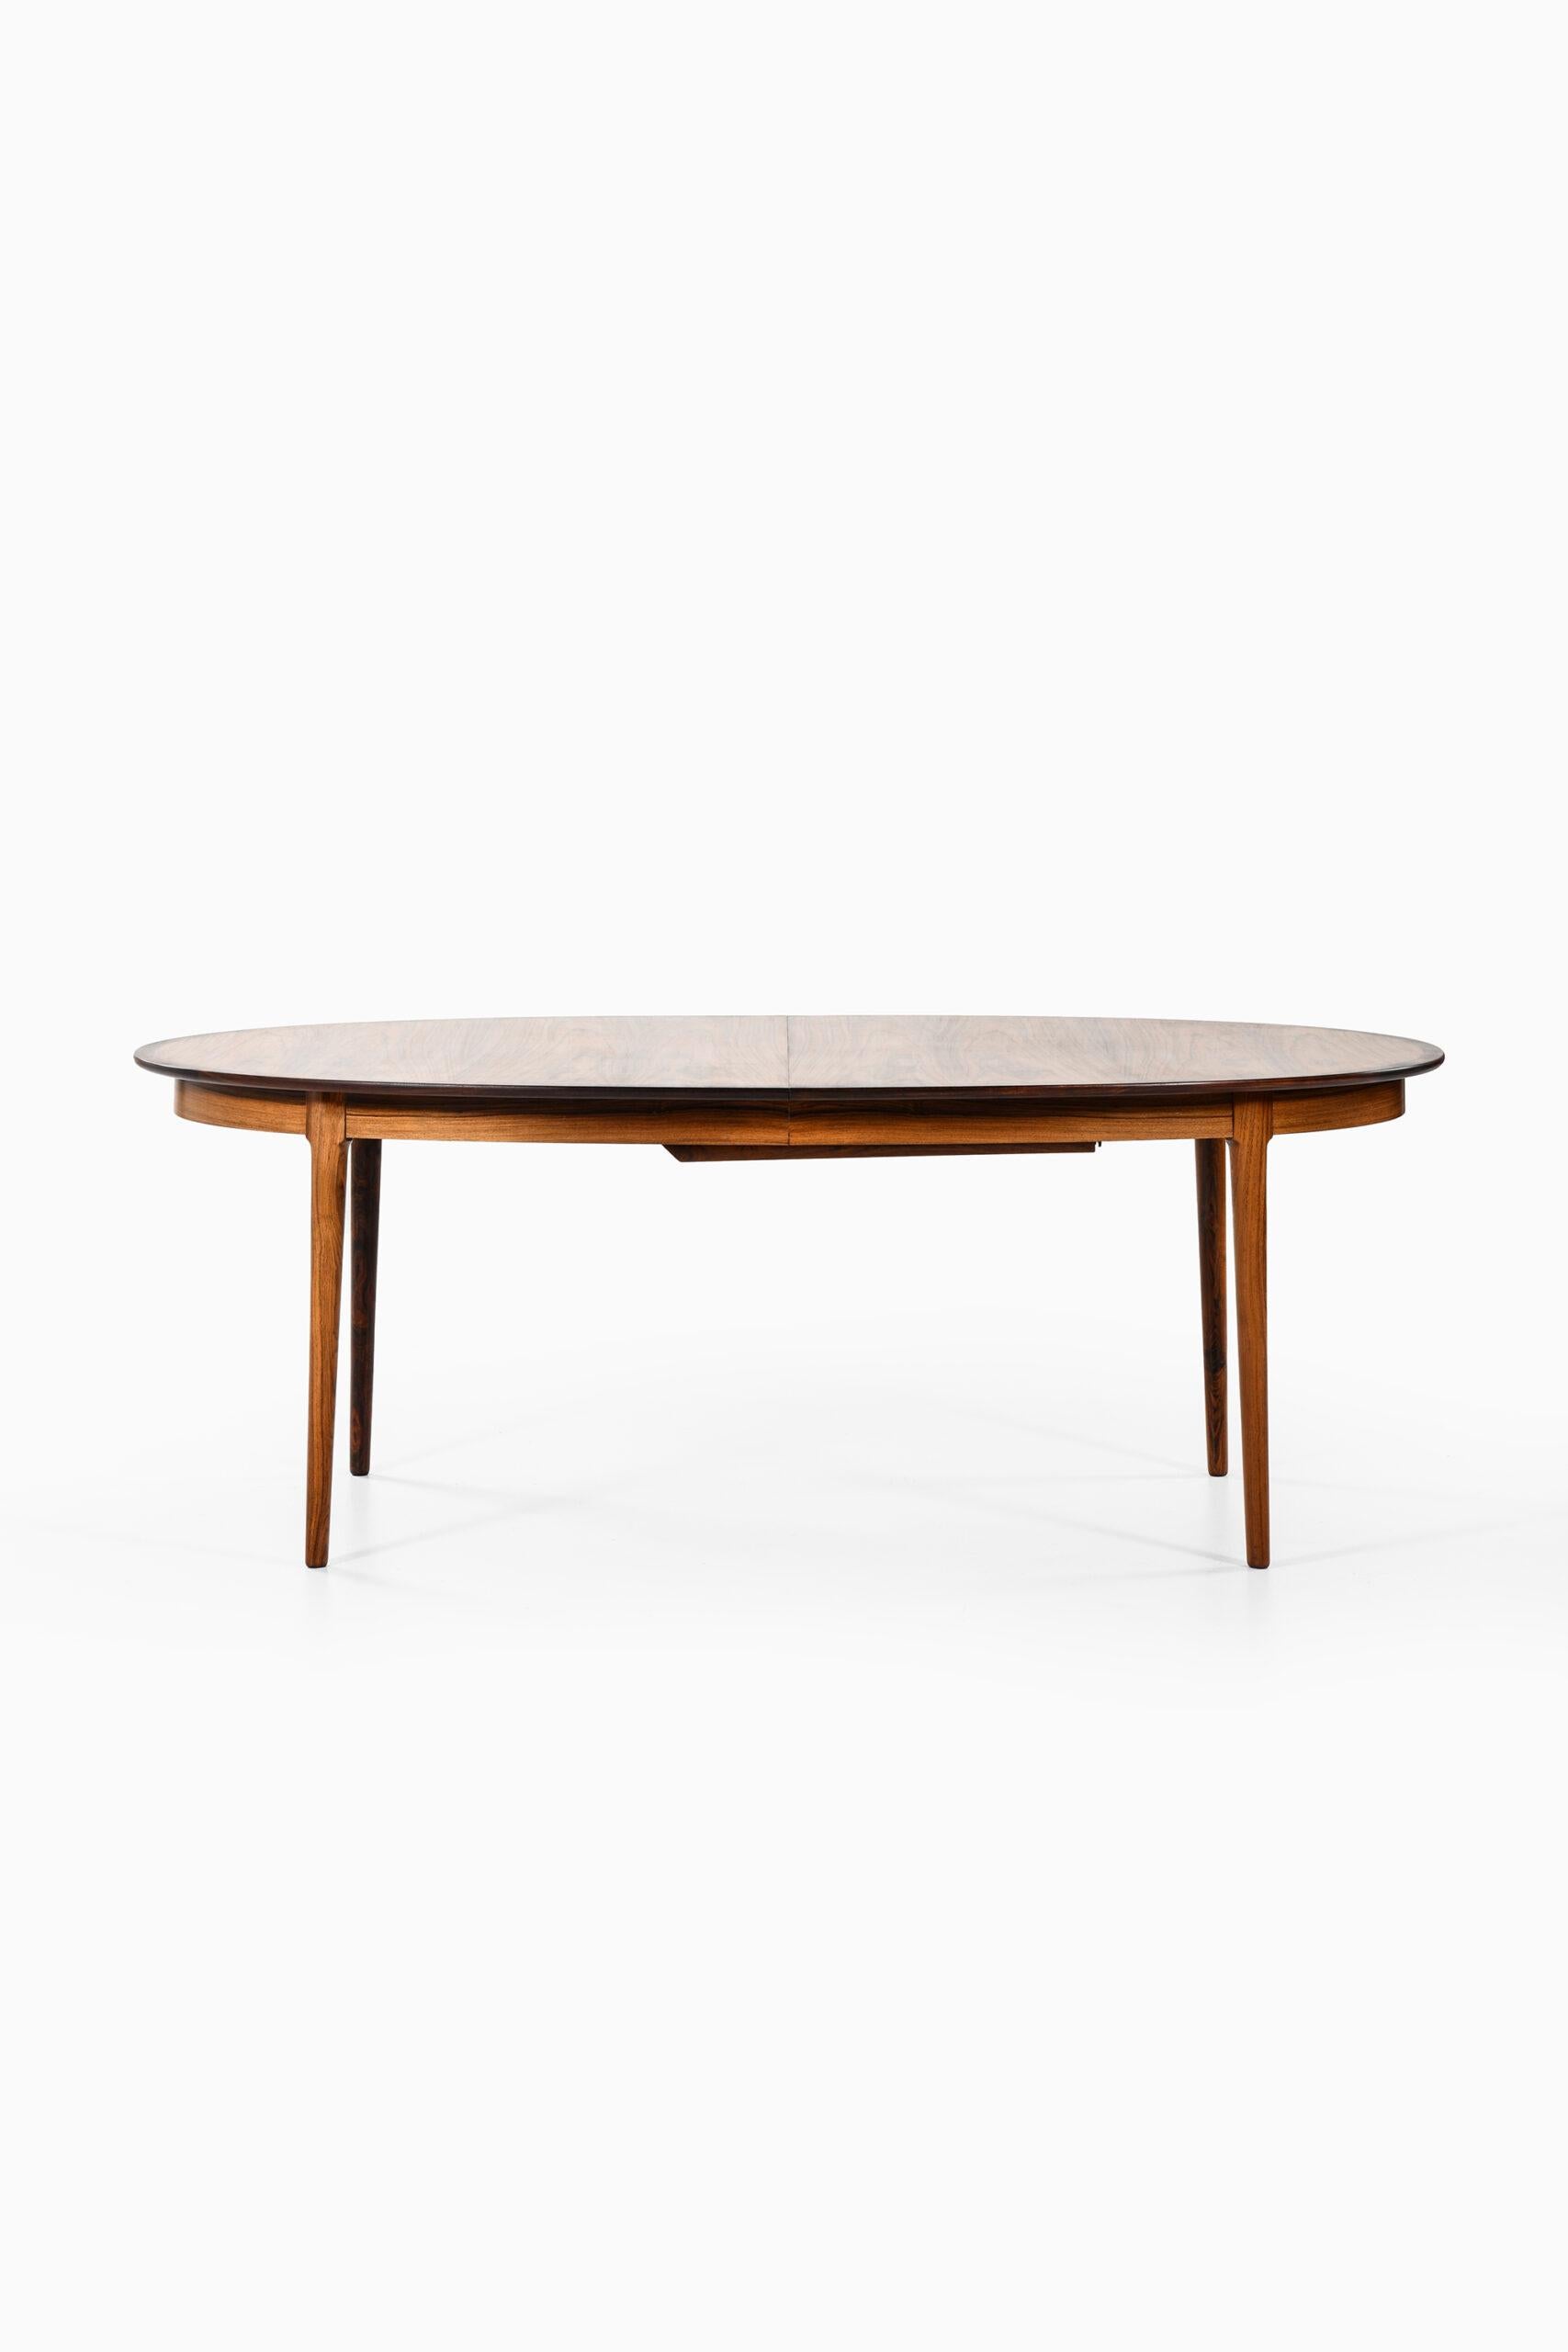 Rare table de salle à manger conçue par Torbjørn Afdal. Produit par Bruksbo en Norvège.
Largeur : 210 ( 310 ) cm.